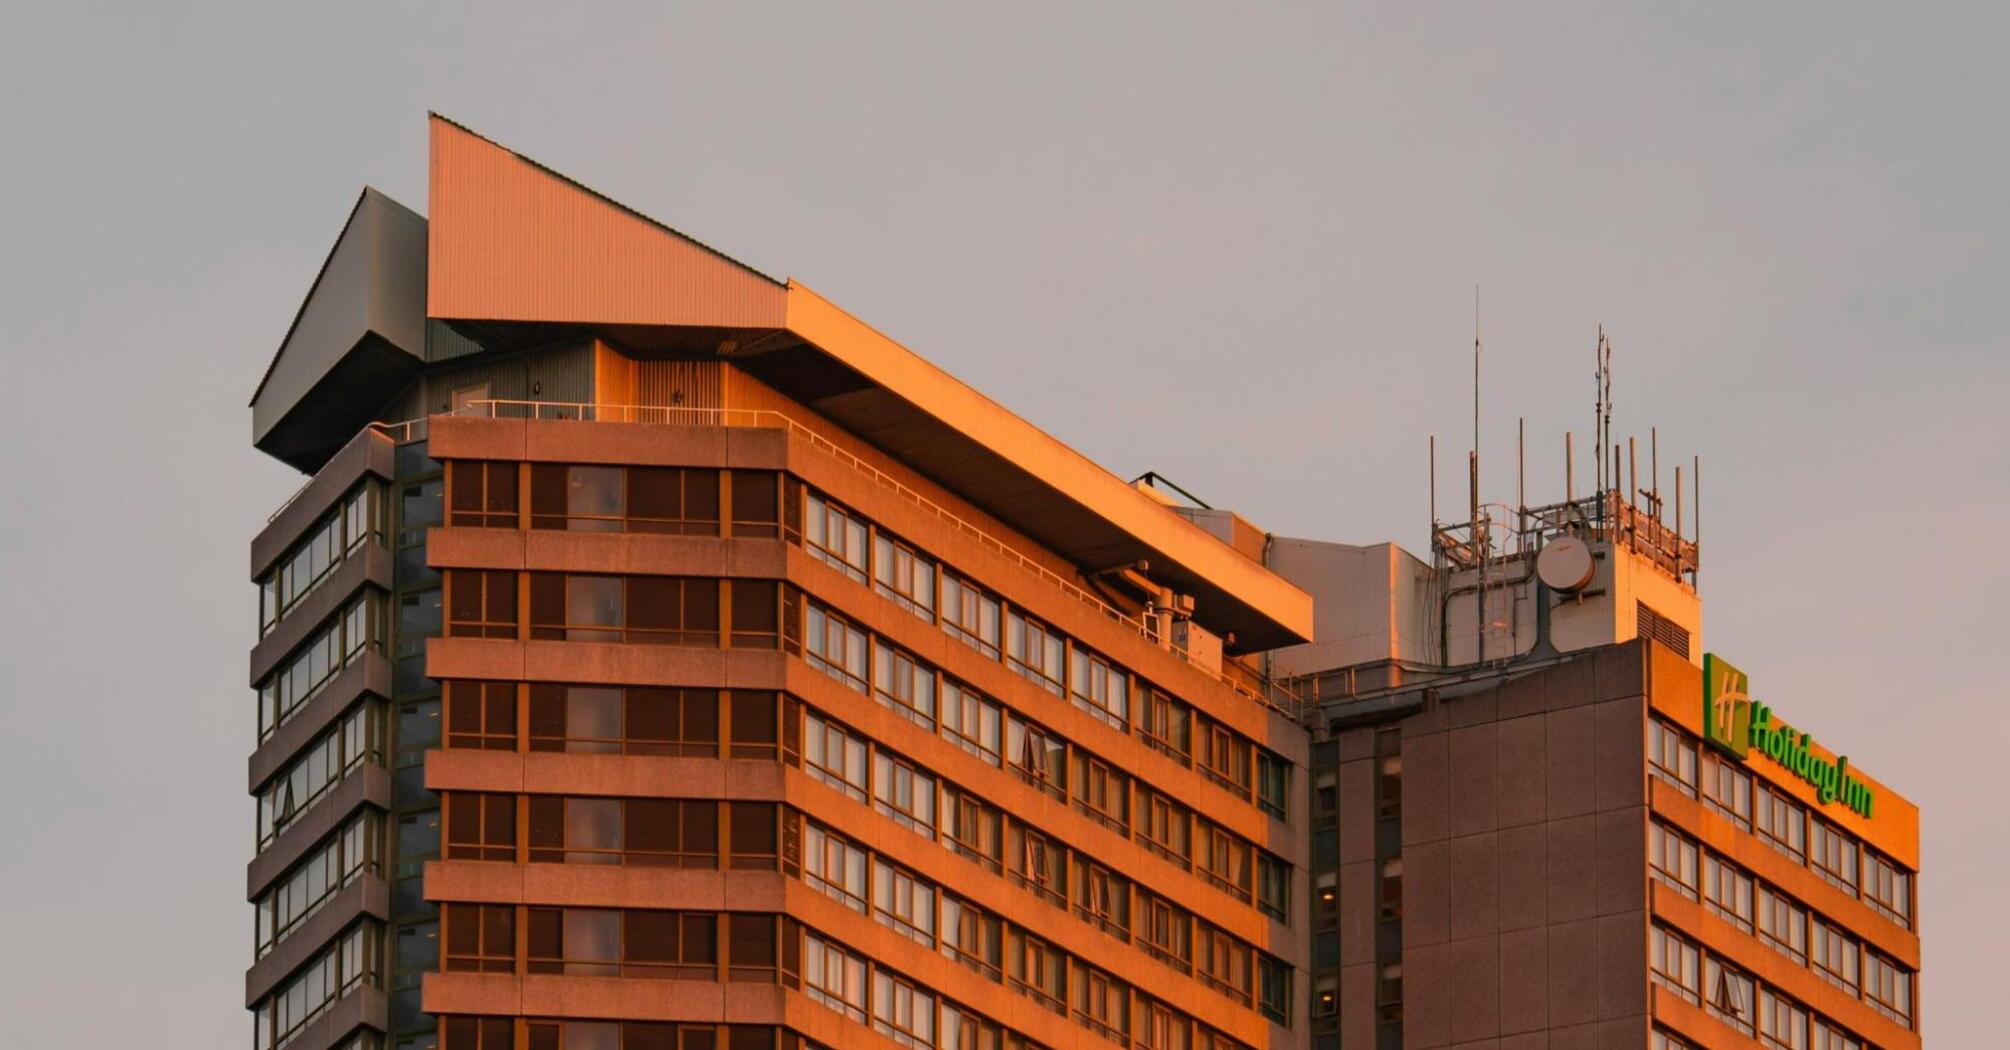 Concrete, modernist, brutalist Holiday Inn Kensington bathed in golden sunset light.